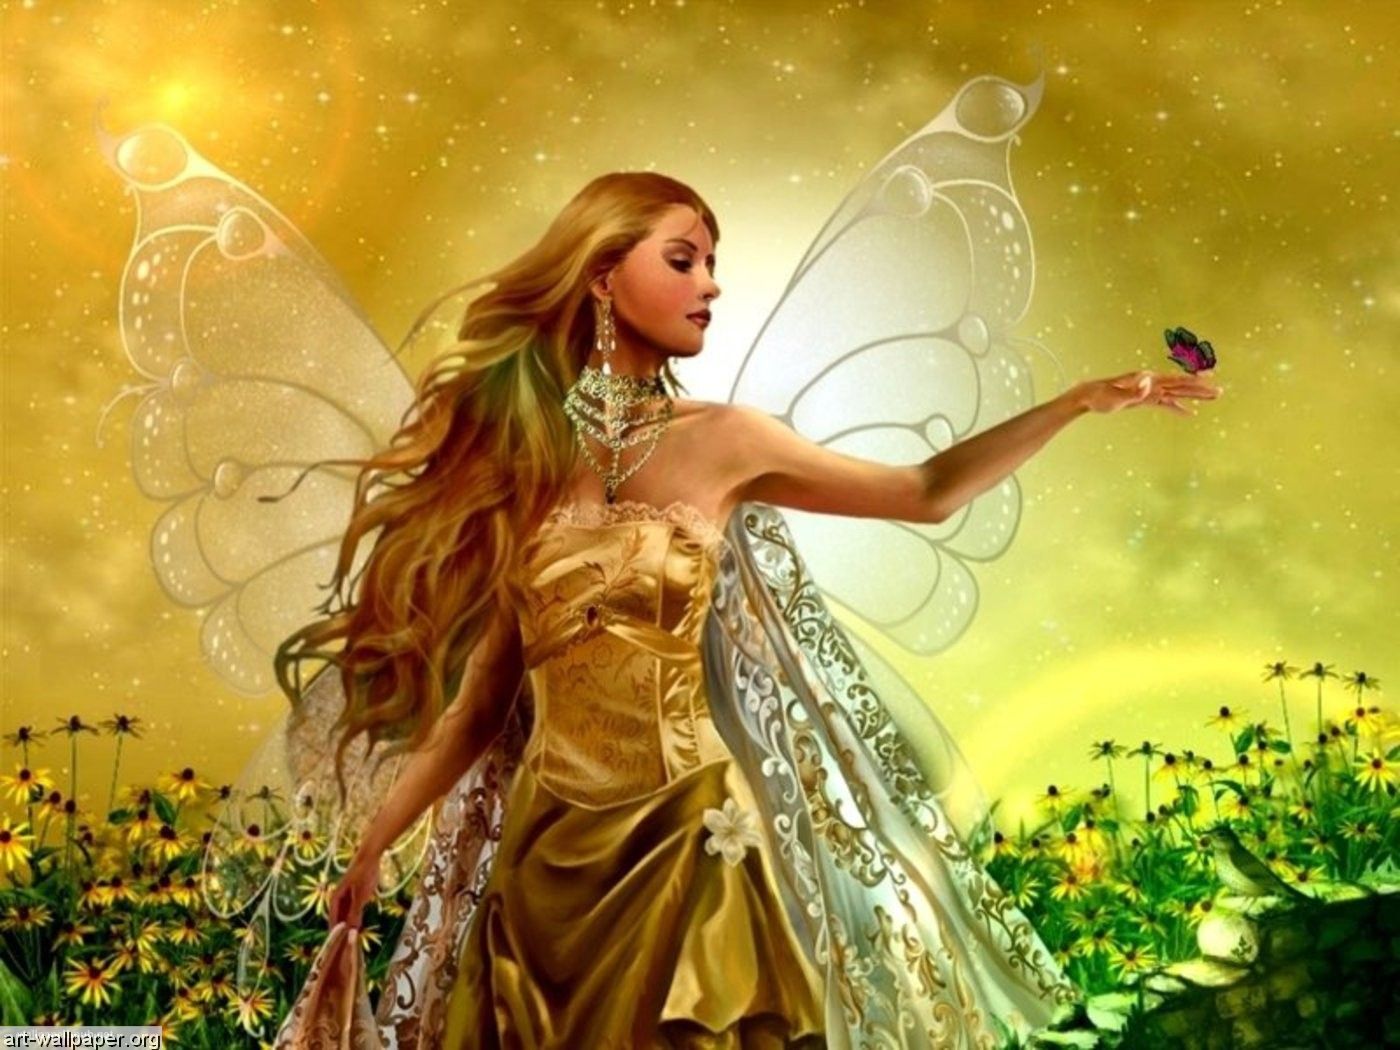 Pretty Fairies - HD Wallpaper 